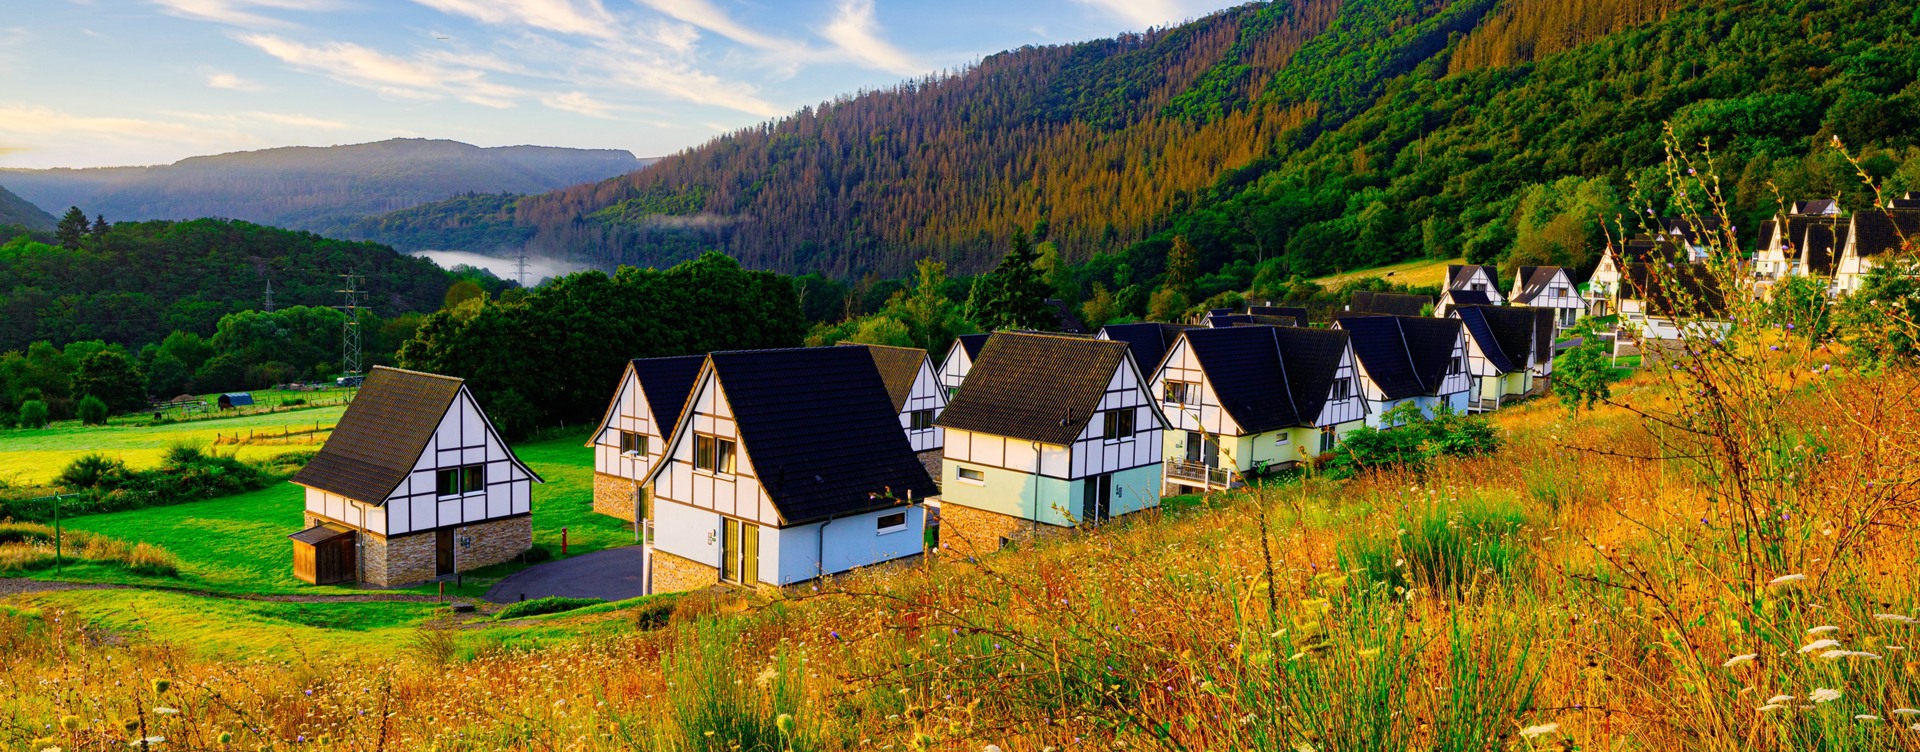 Geniet van een heerlijk verblijf
op een bungalowpark in de Duitse Eifel